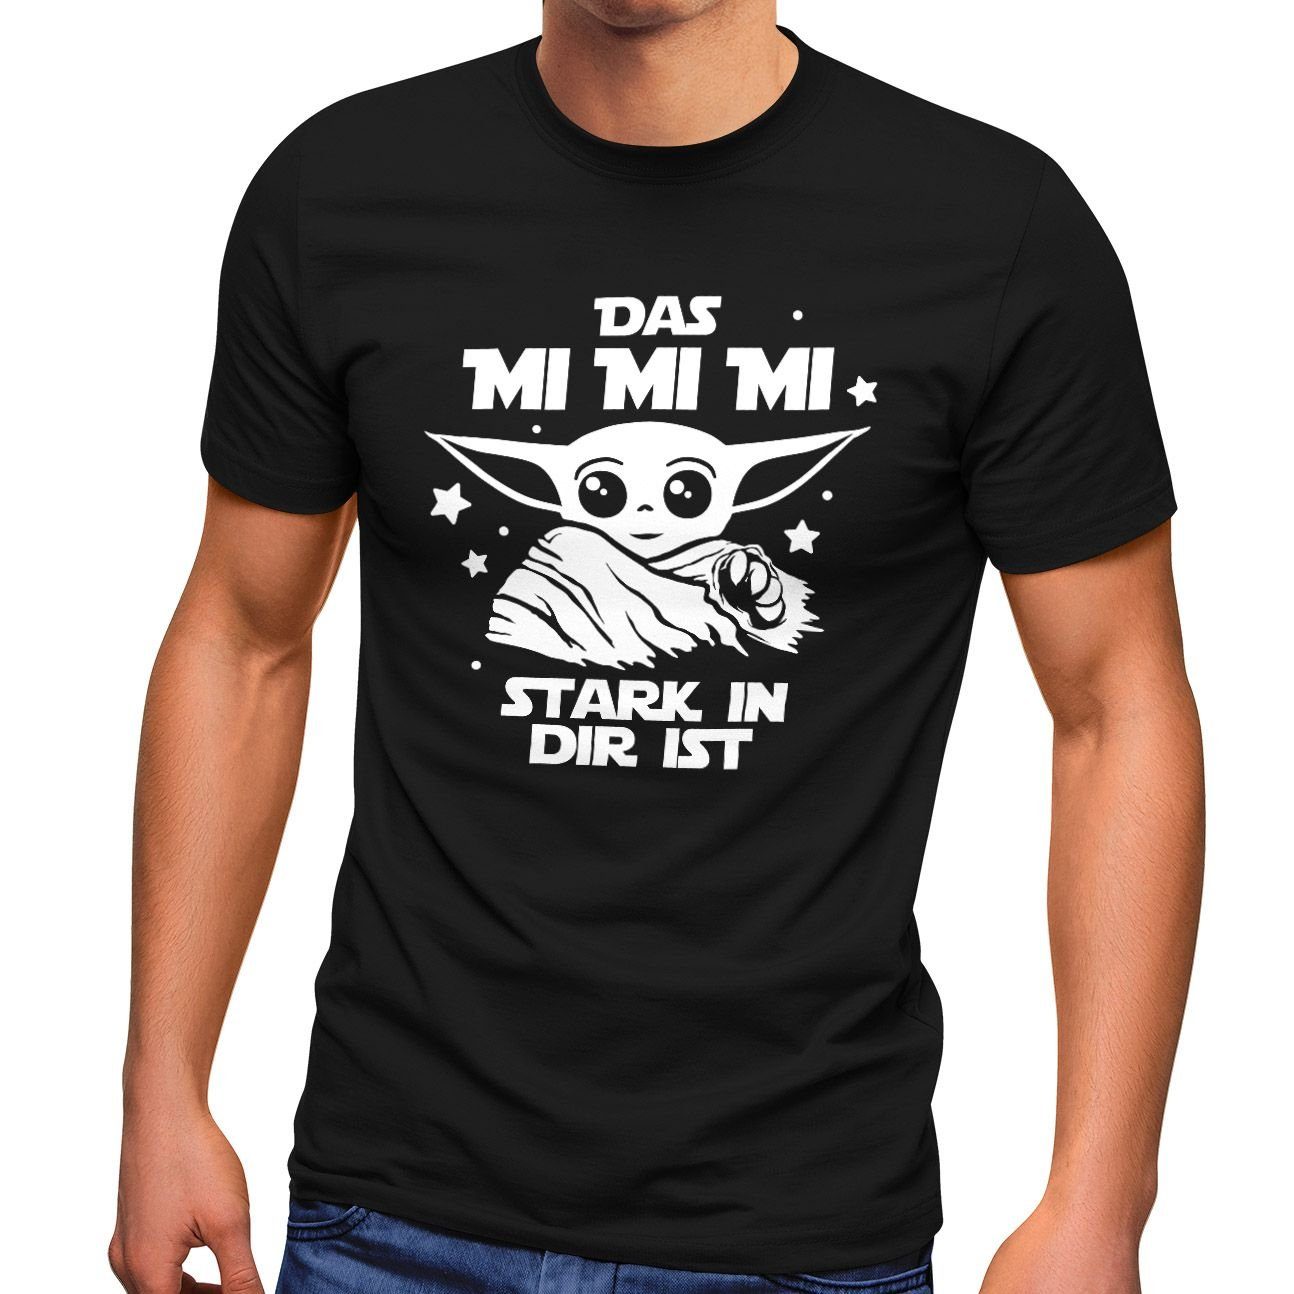 Das Print-Shirt mit Herren Fun-Shirt in ist T-Shirt Print mi MoonWorks stark dir Parodie mi Moonworks® mi Spruch